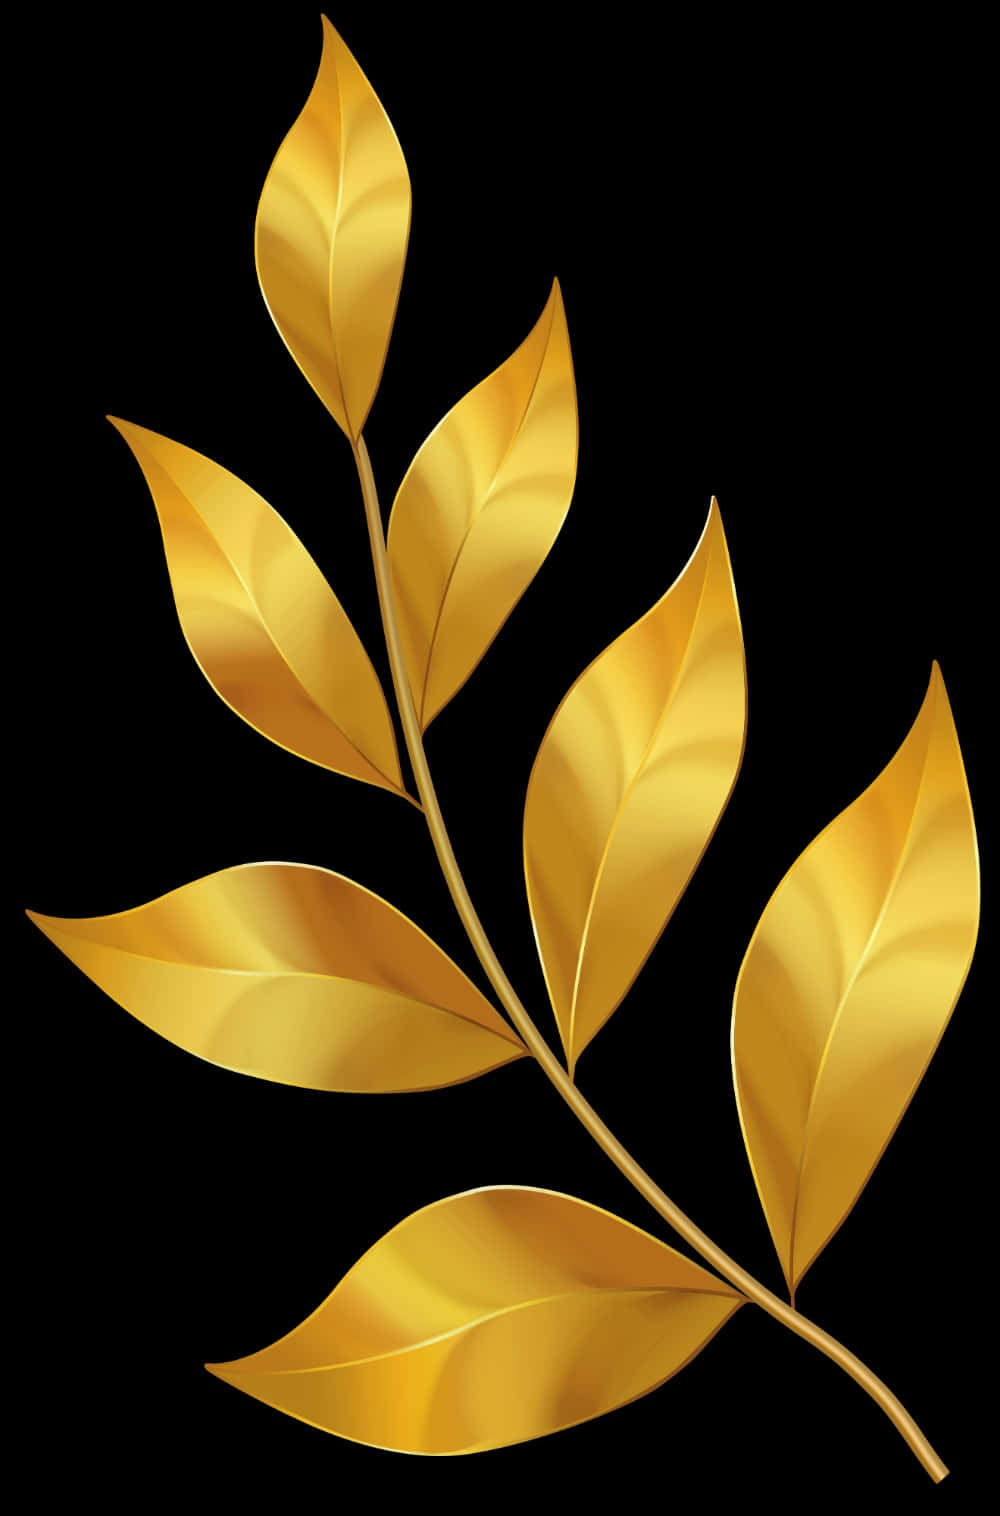 Golden Leaf Artwork Wallpaper